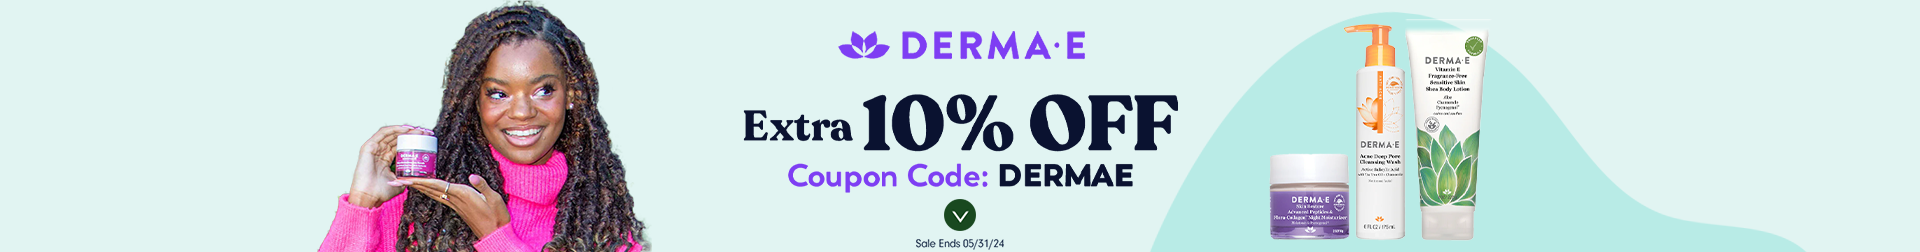 Extra 10% OFF Derma E